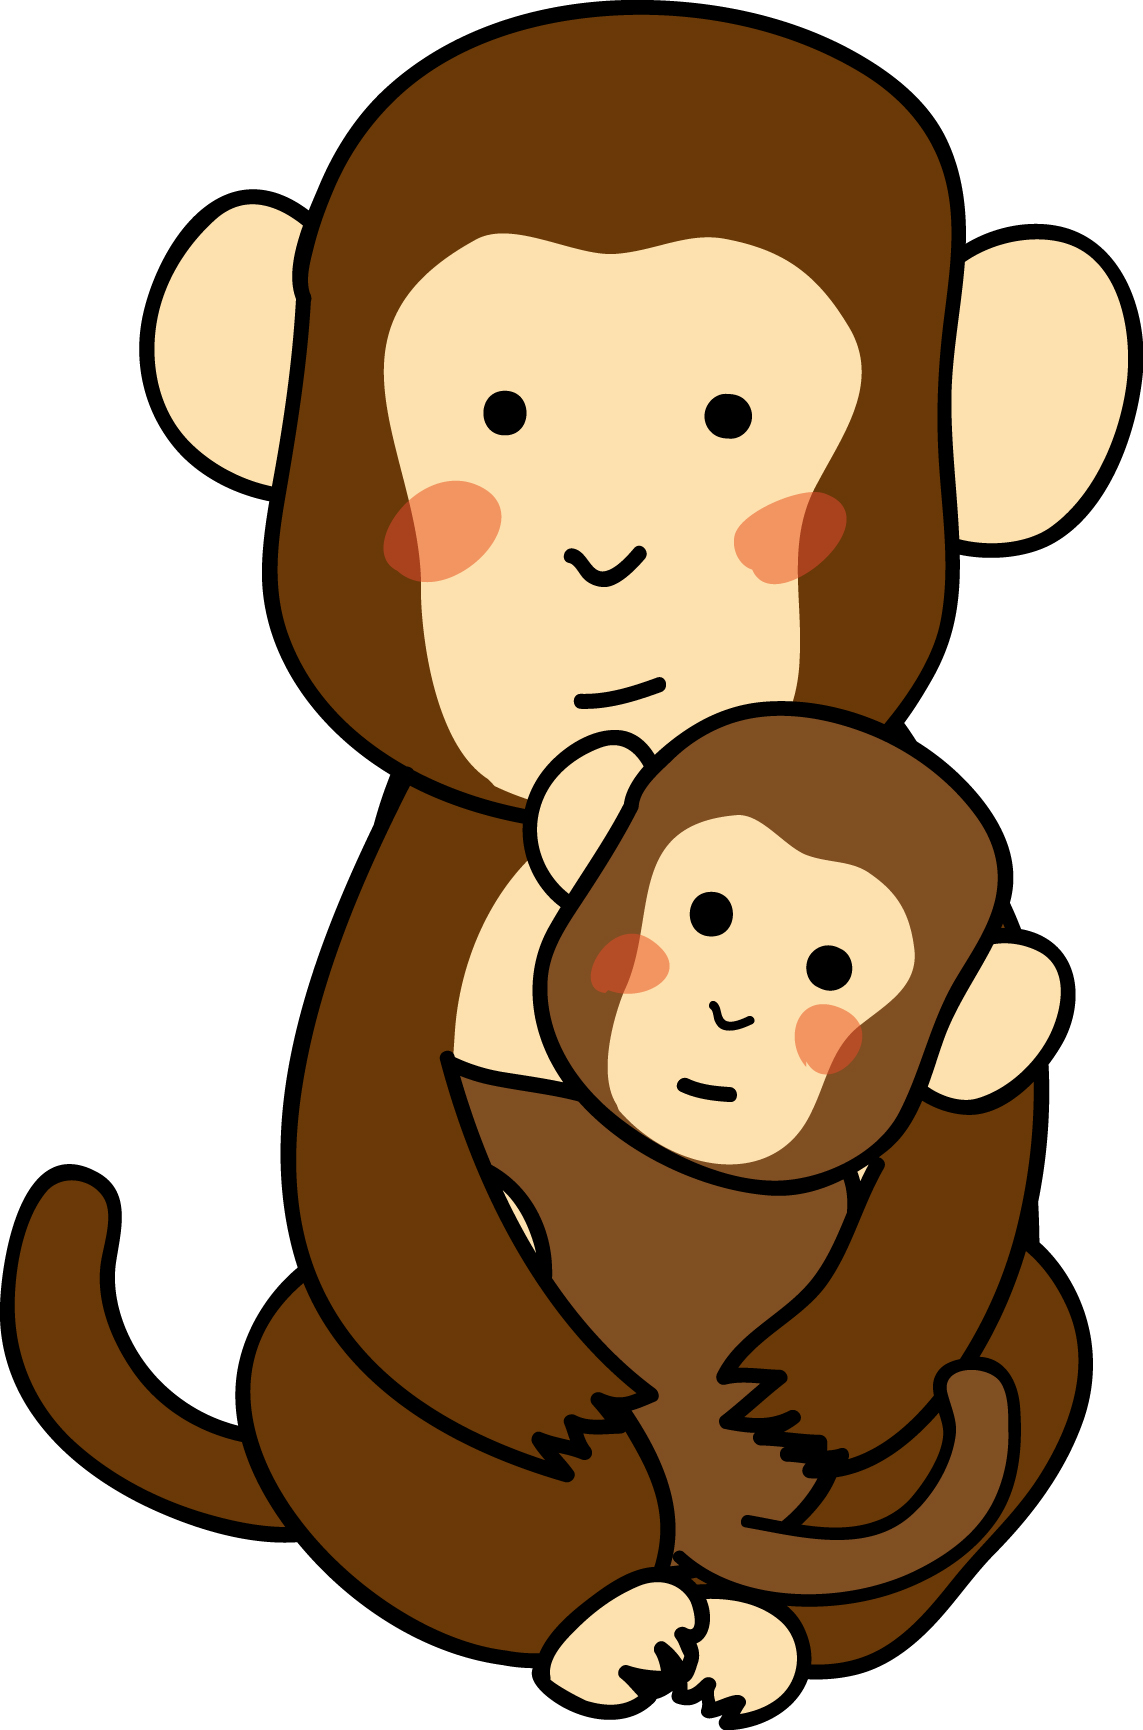 動物の印刷用イラスト素材 猿の親子 ダウンロード